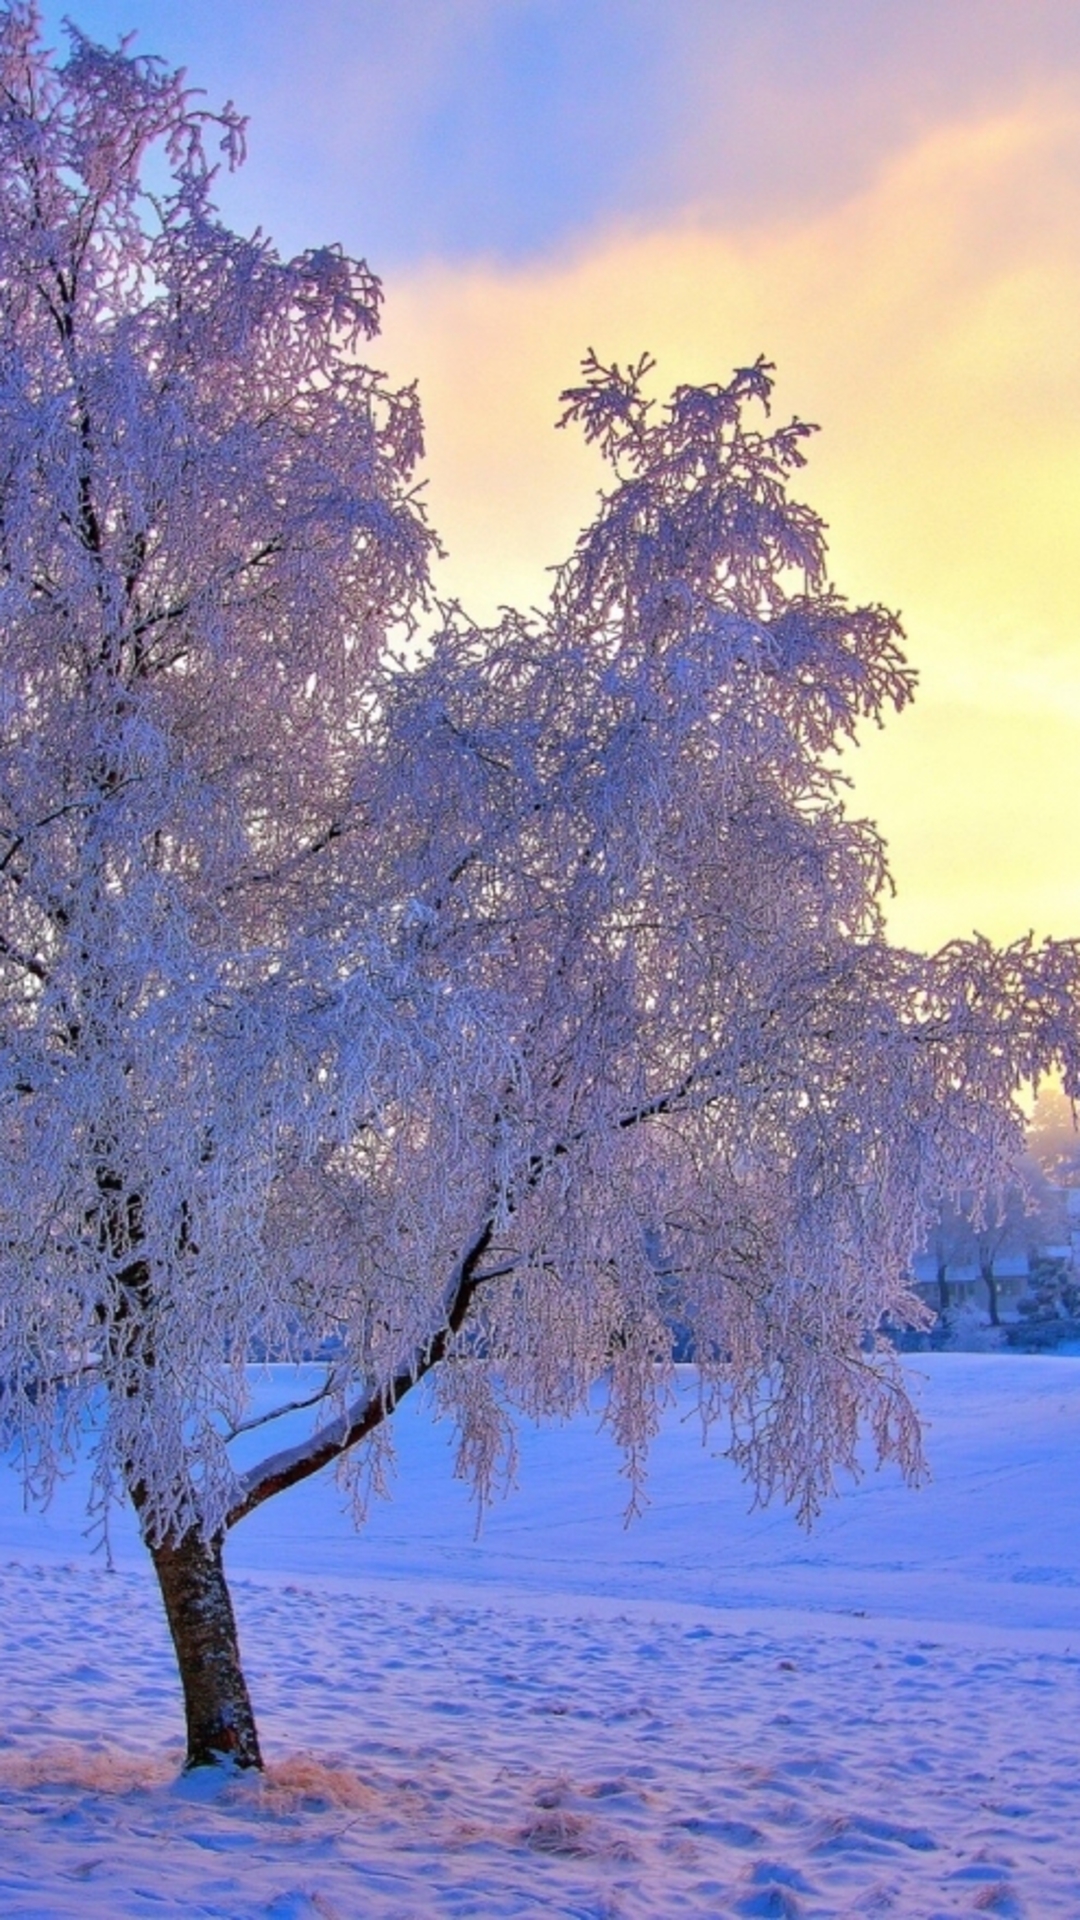 唯美夕阳雪景自然风光手机壁纸下载